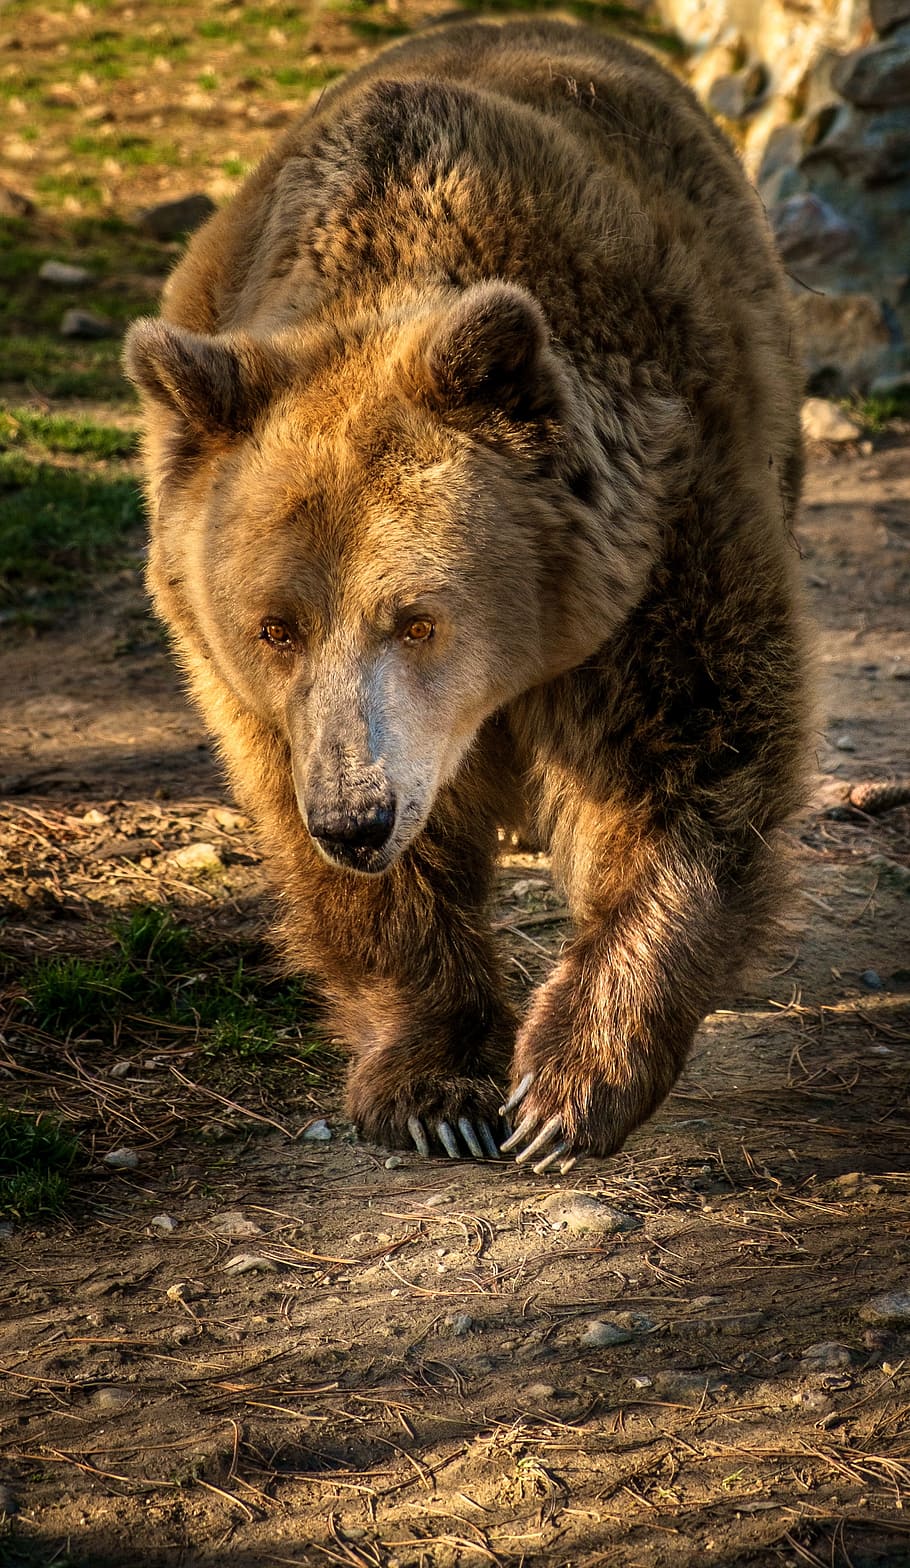 fotografi jarak dekat, beruang, berjalan, siang hari, beruang coklat, hewan, mamalia, omnivora, tema binatang, margasatwa